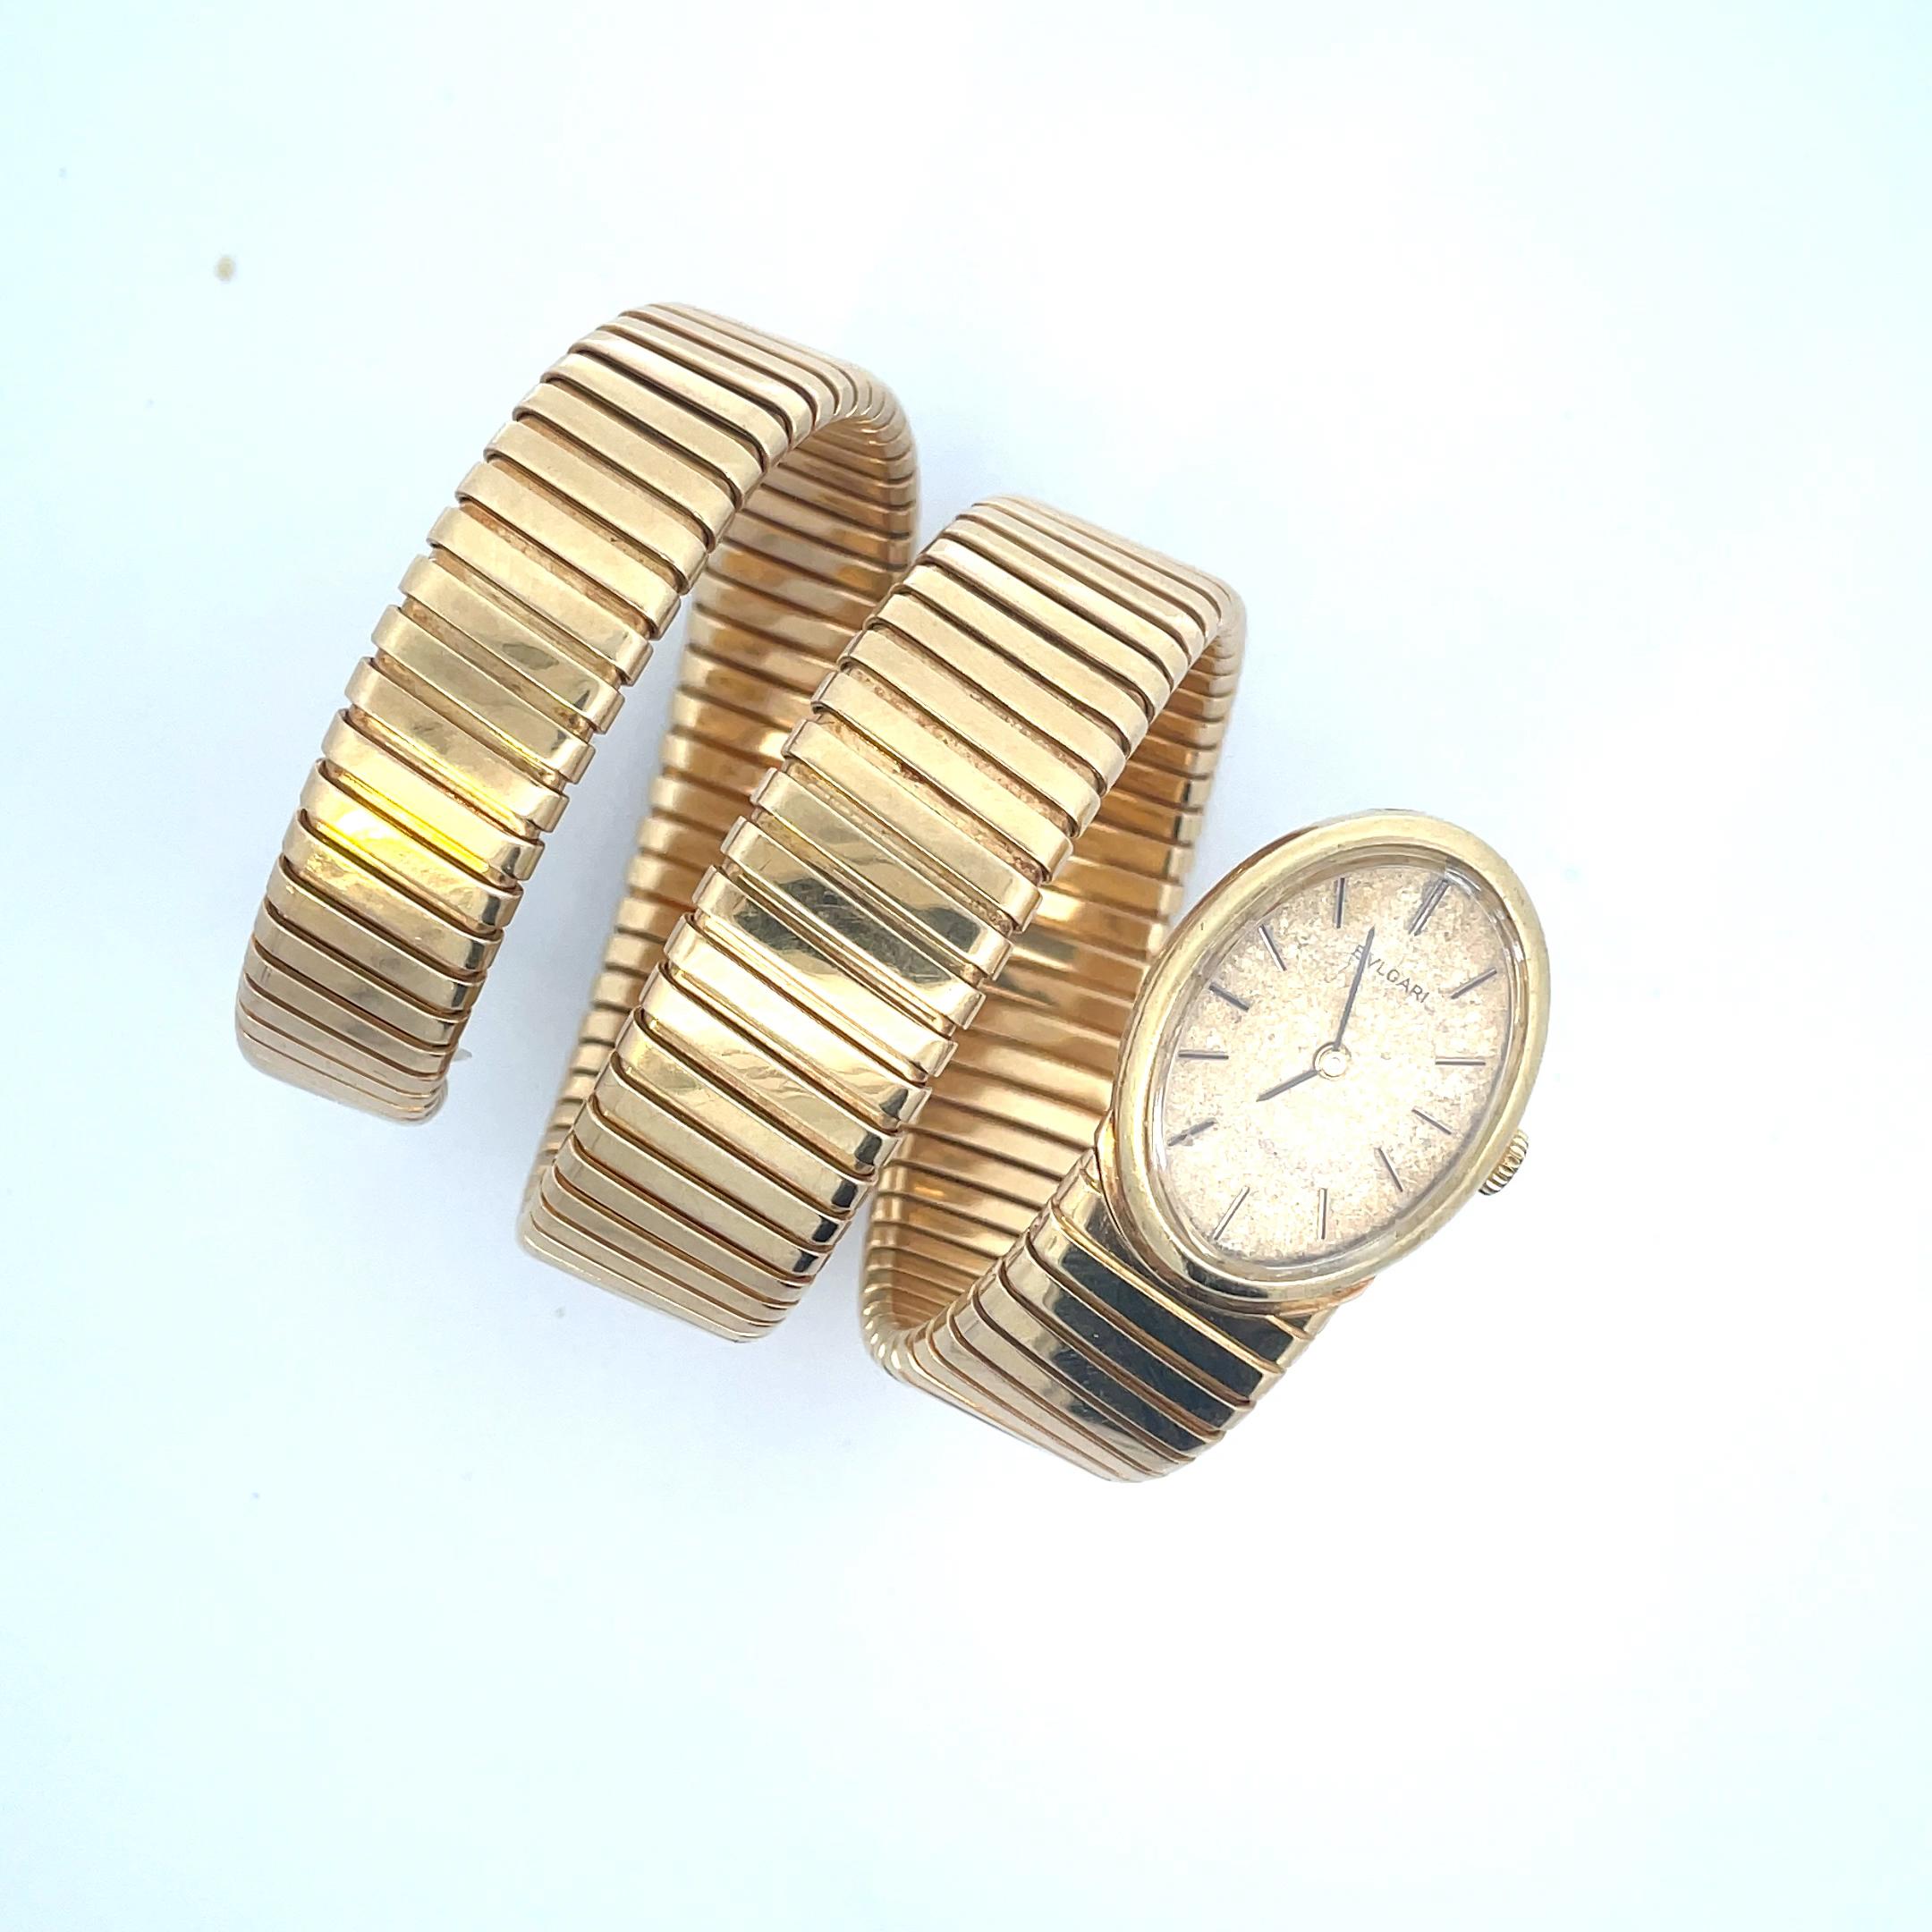 Eine seltene Schöne Vintage Bulgari Tubogas Uhr, aus 18k Gelbgold, um 1966.
Die goldene Uhr hat ein ovales Gehäuse mit einem matten Zifferblatt in GoldAged-Champagne. Das Zifferblatt ist mit Goldzeigern ausgestattet.
Das Uhrwerk ist ein Juvenia